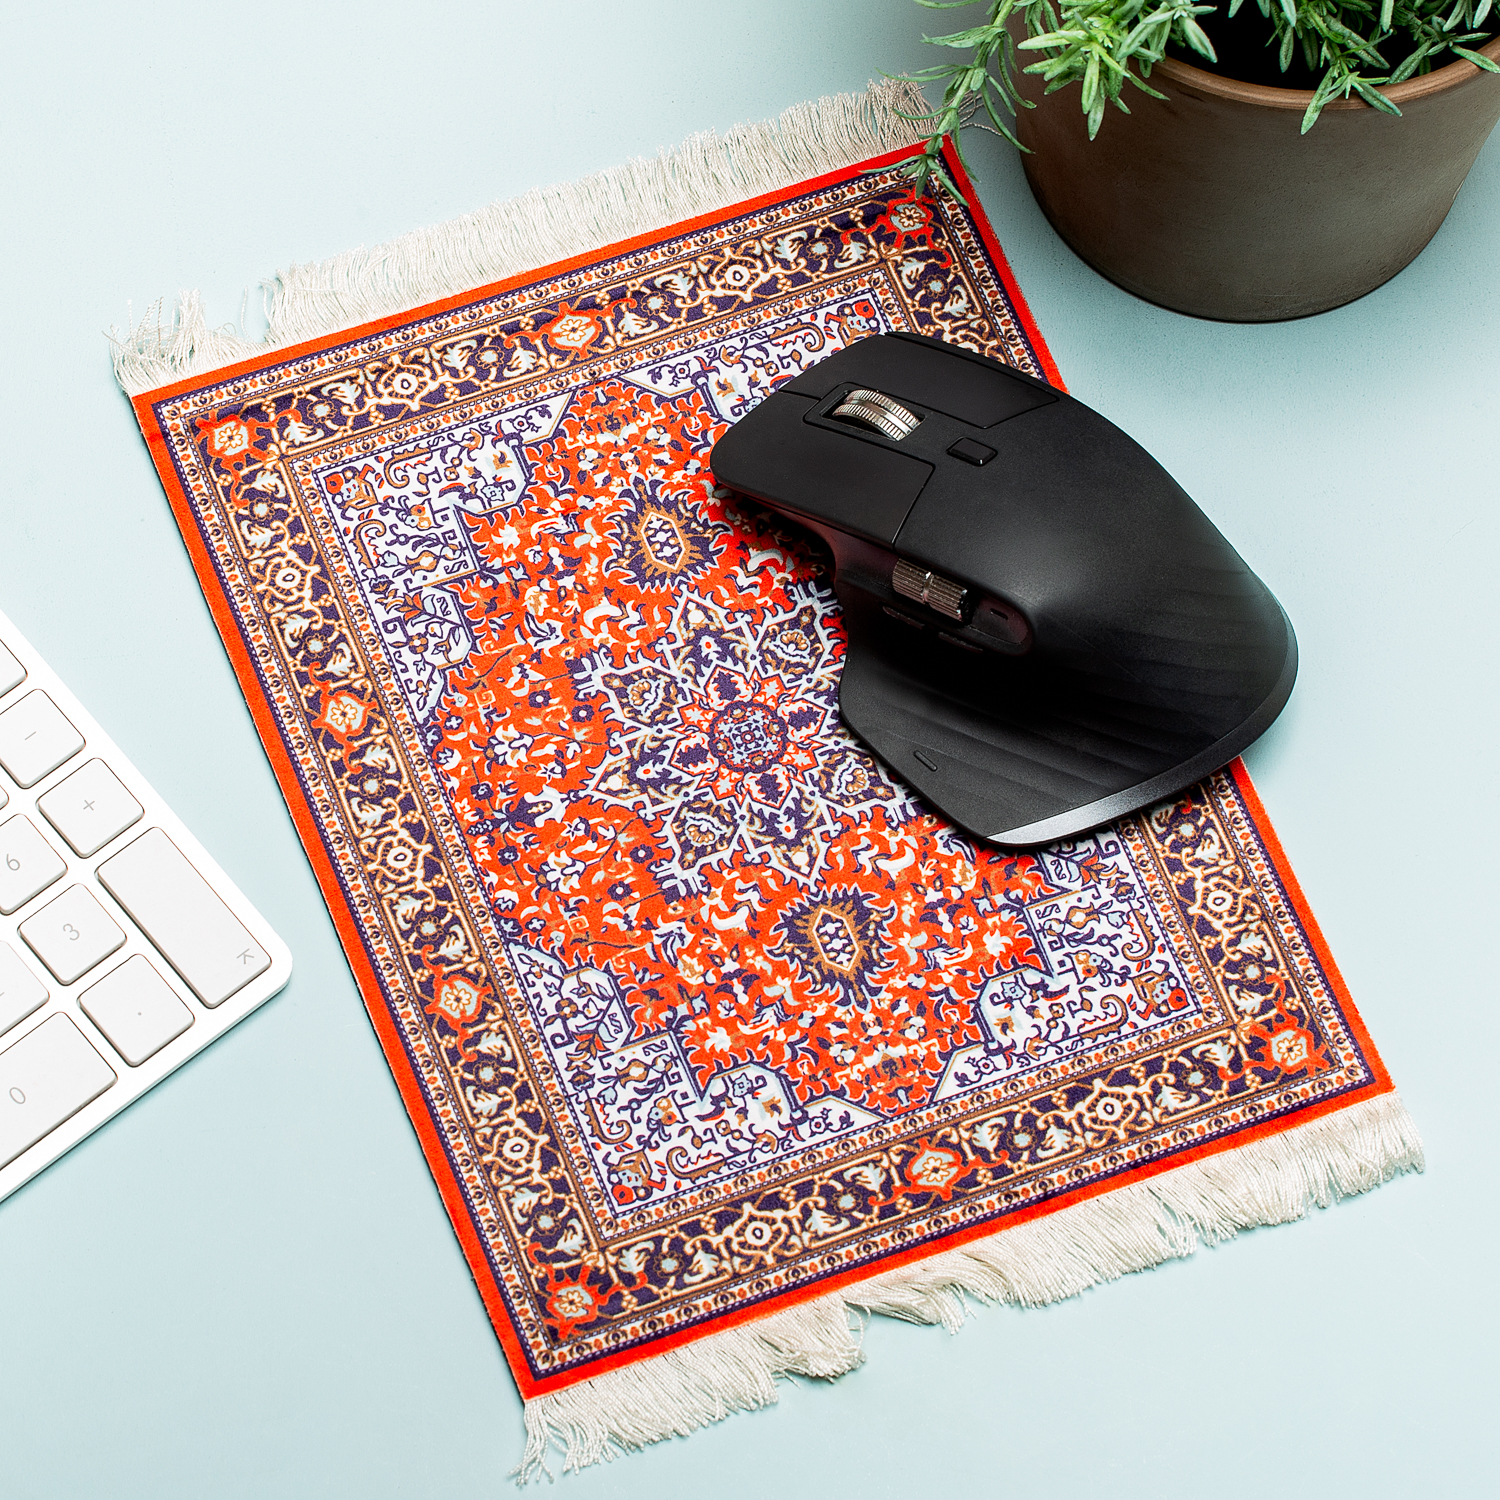 verpleegster Vervagen voor mij Perzisch tapijt muismat van Invotis bestel je online bij Cadeau